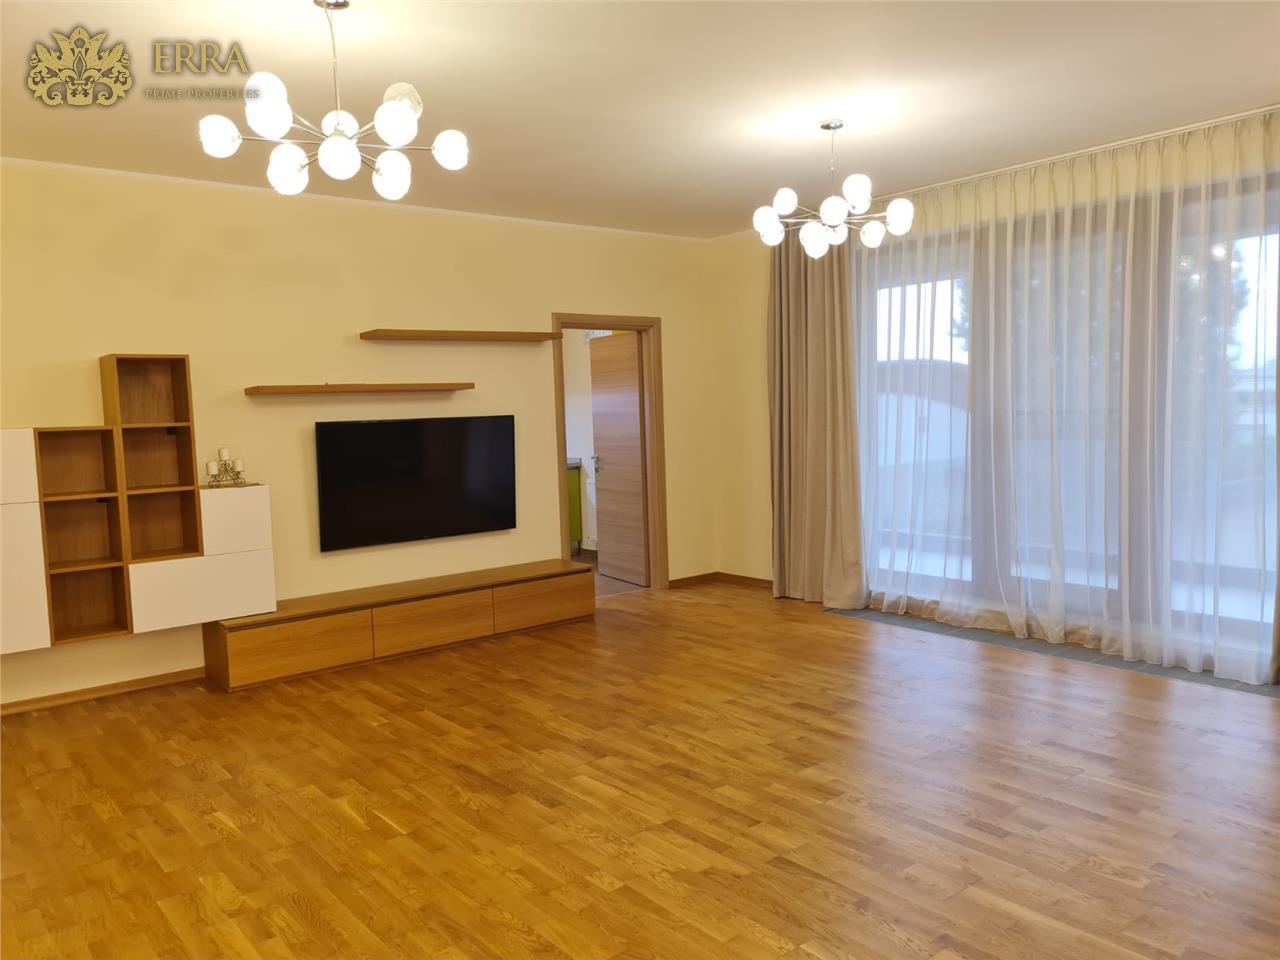 Iancu Nicolae, 3 rooms apartment, garage